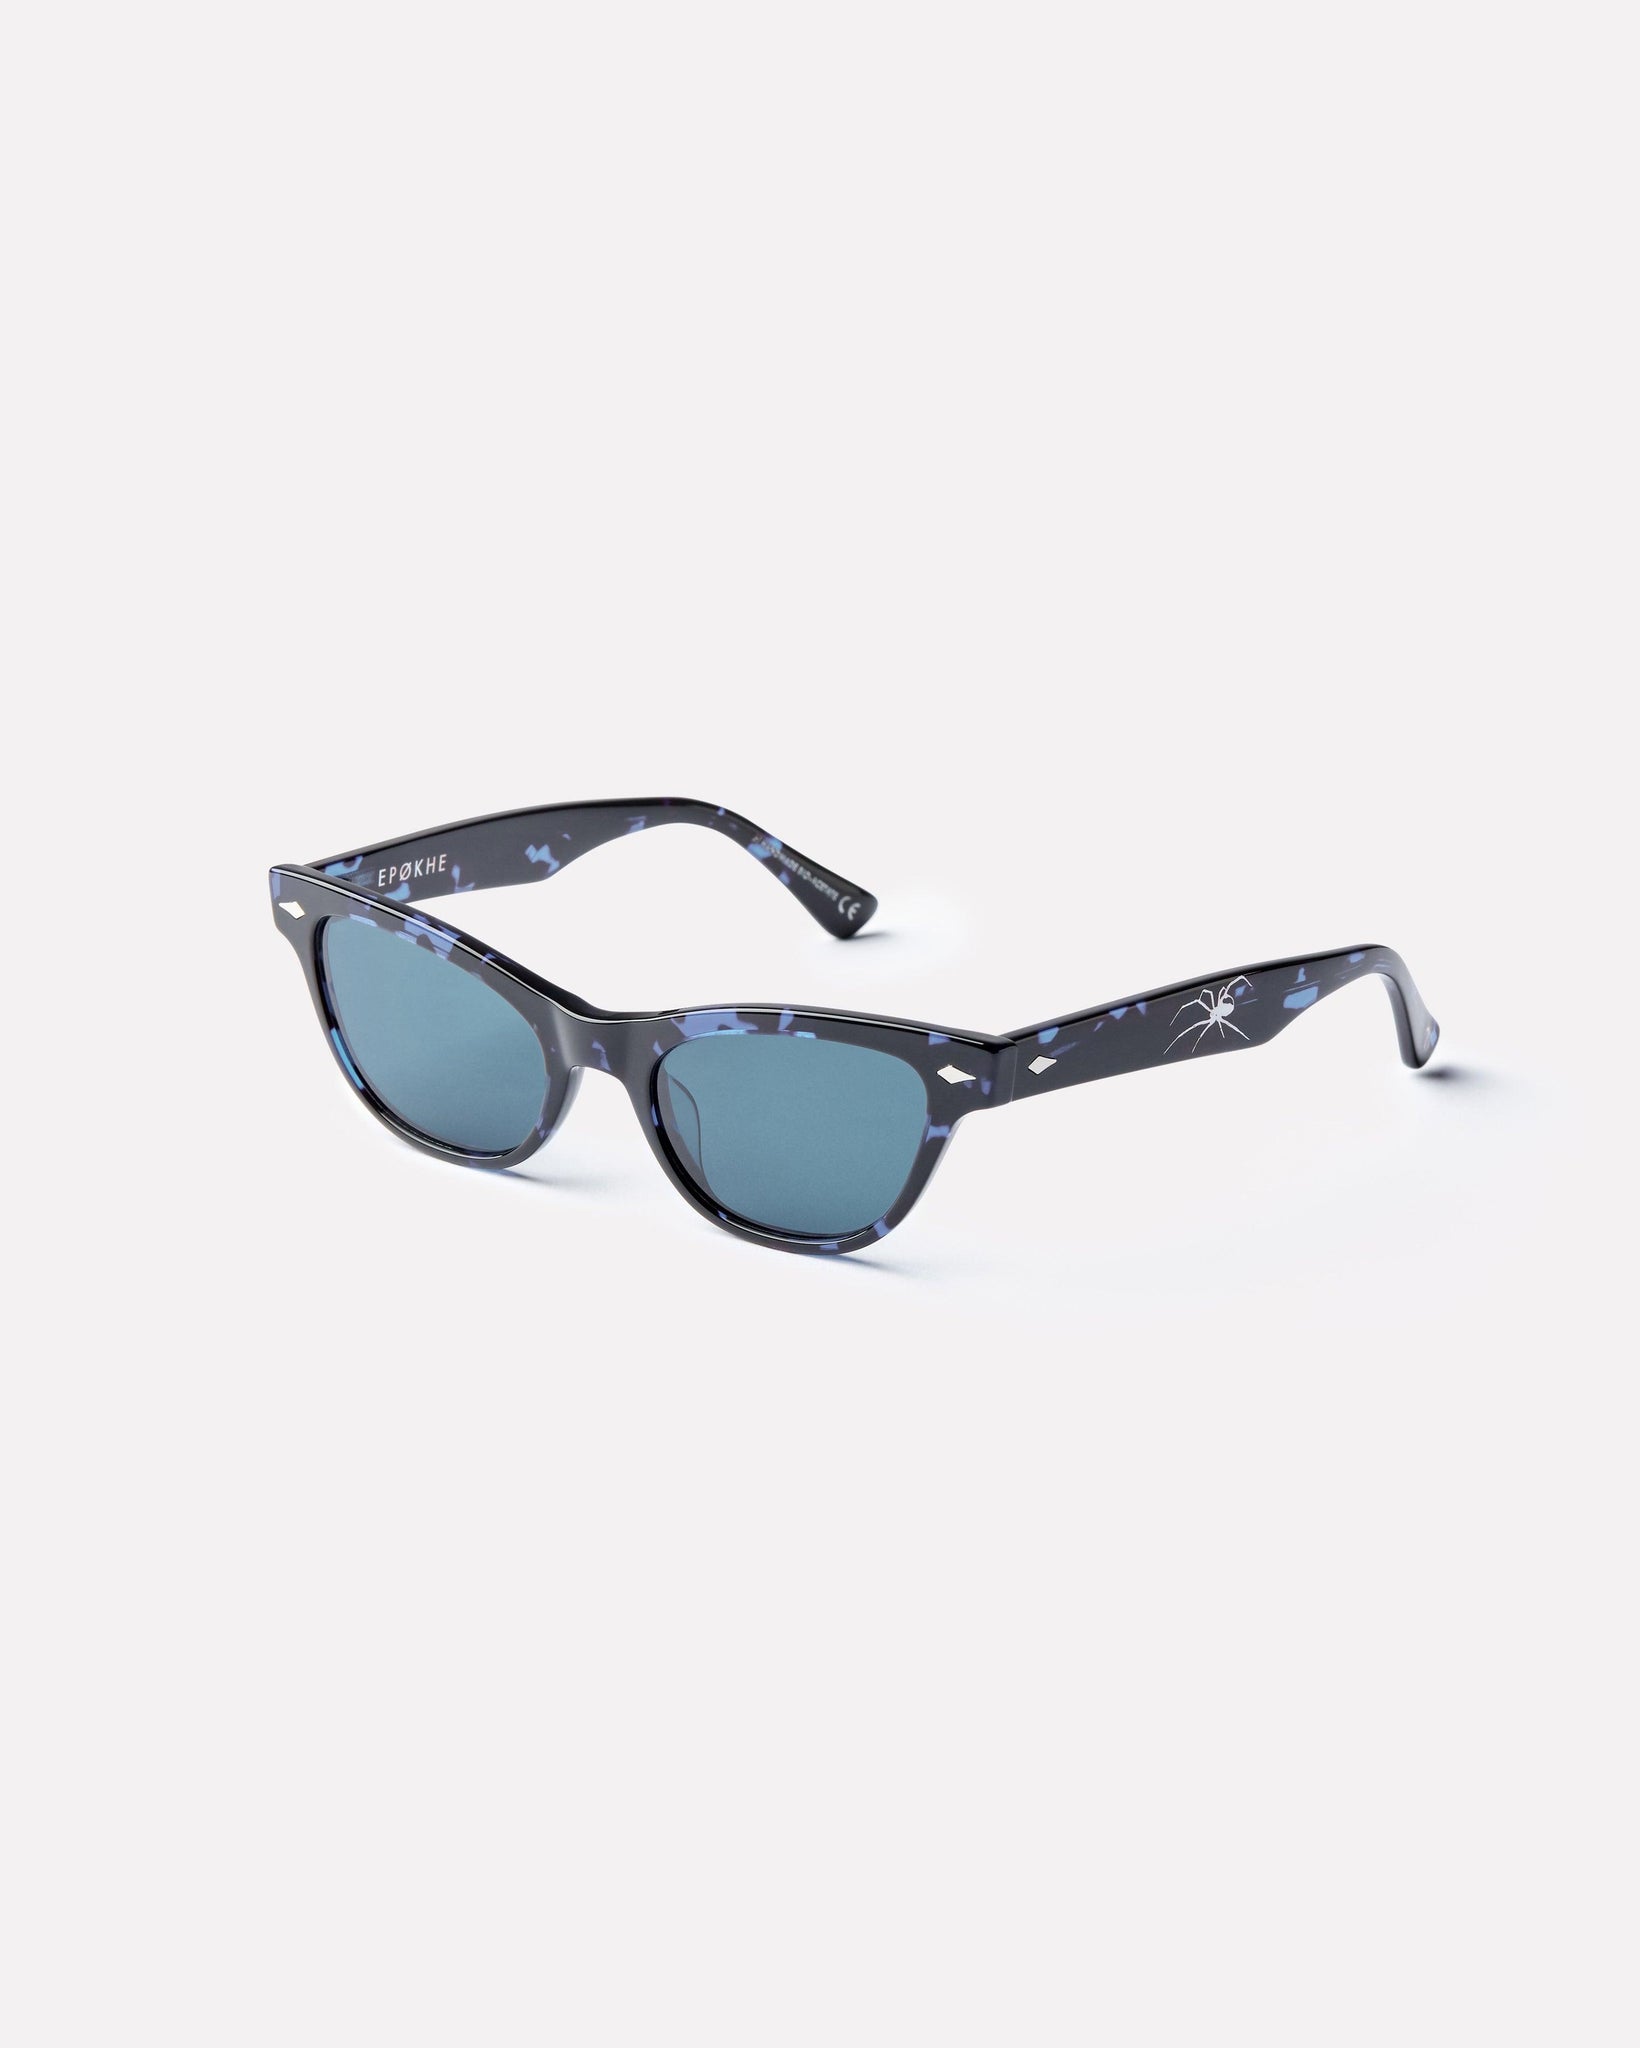 Veil - Blue Tortoise Polished / Blue - Sunglasses - EPOKHE EYEWEAR